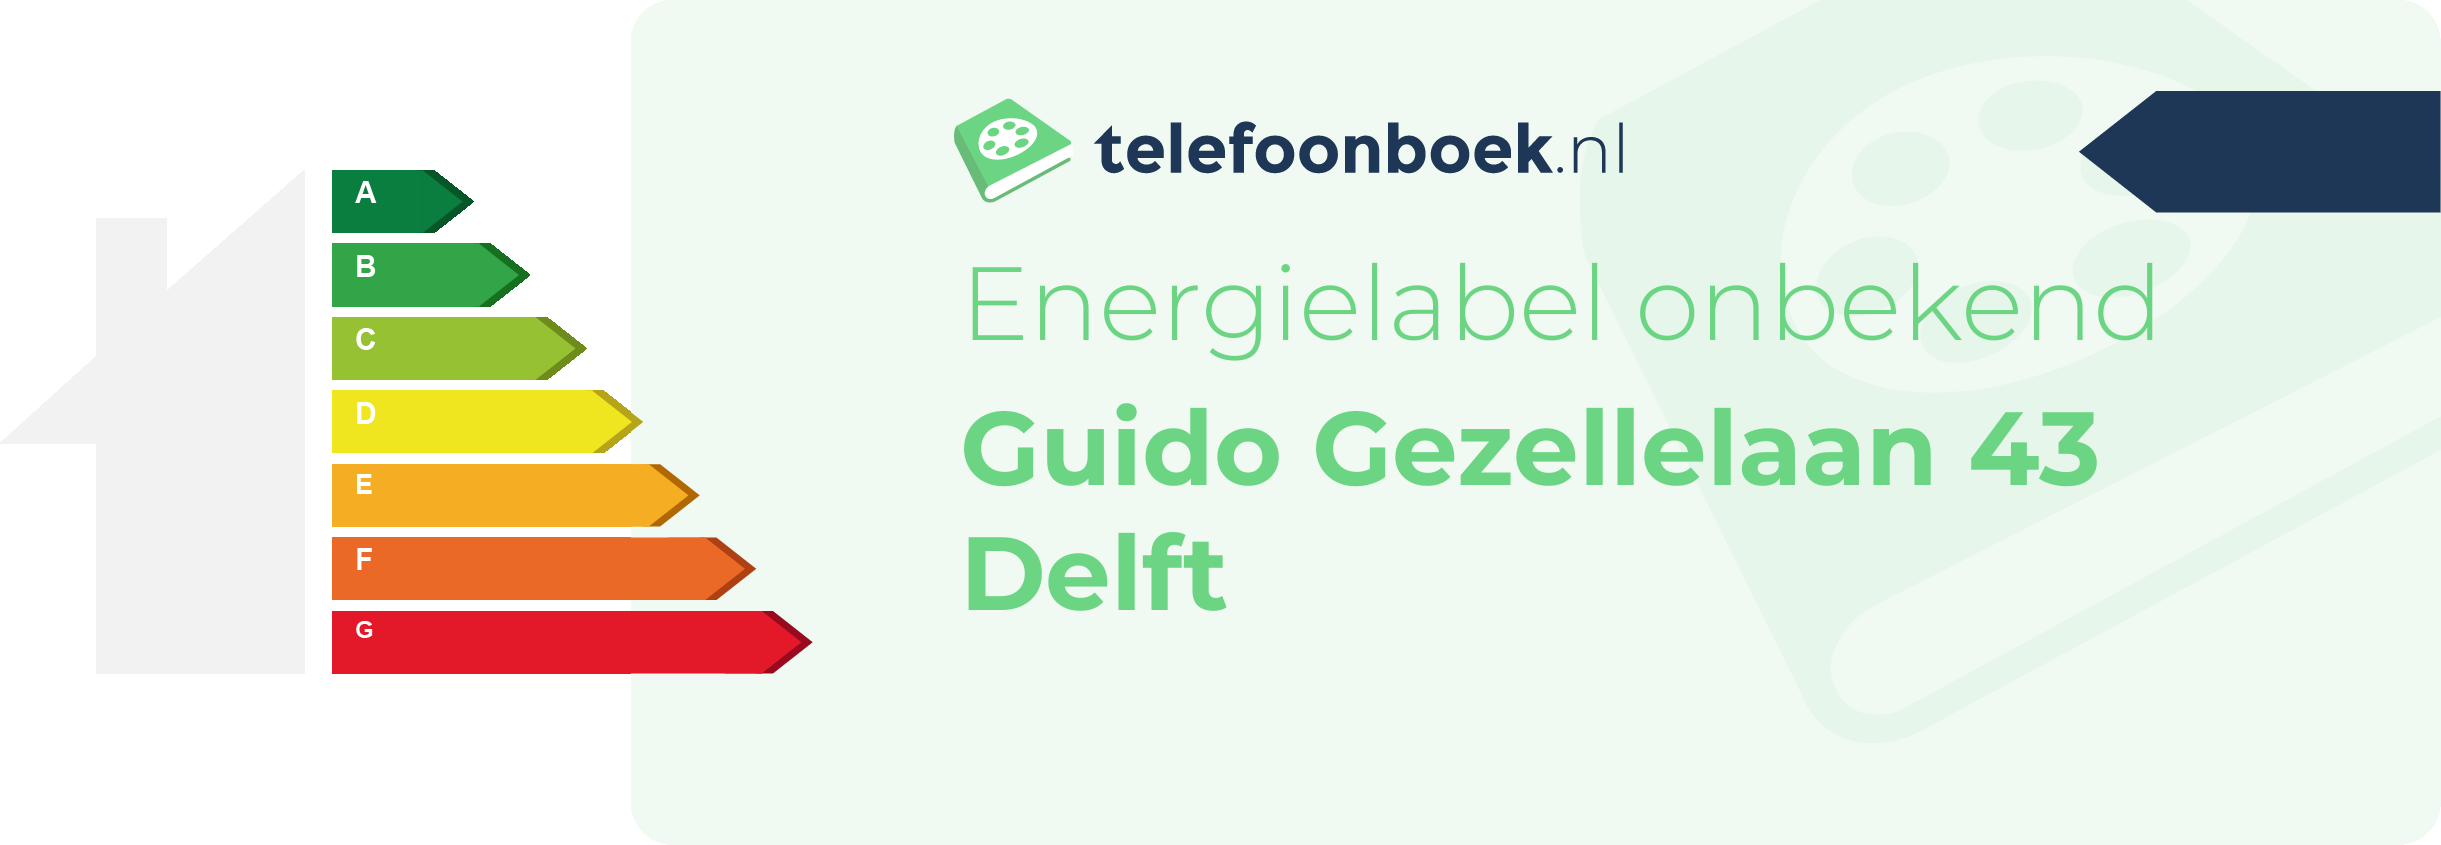 Energielabel Guido Gezellelaan 43 Delft